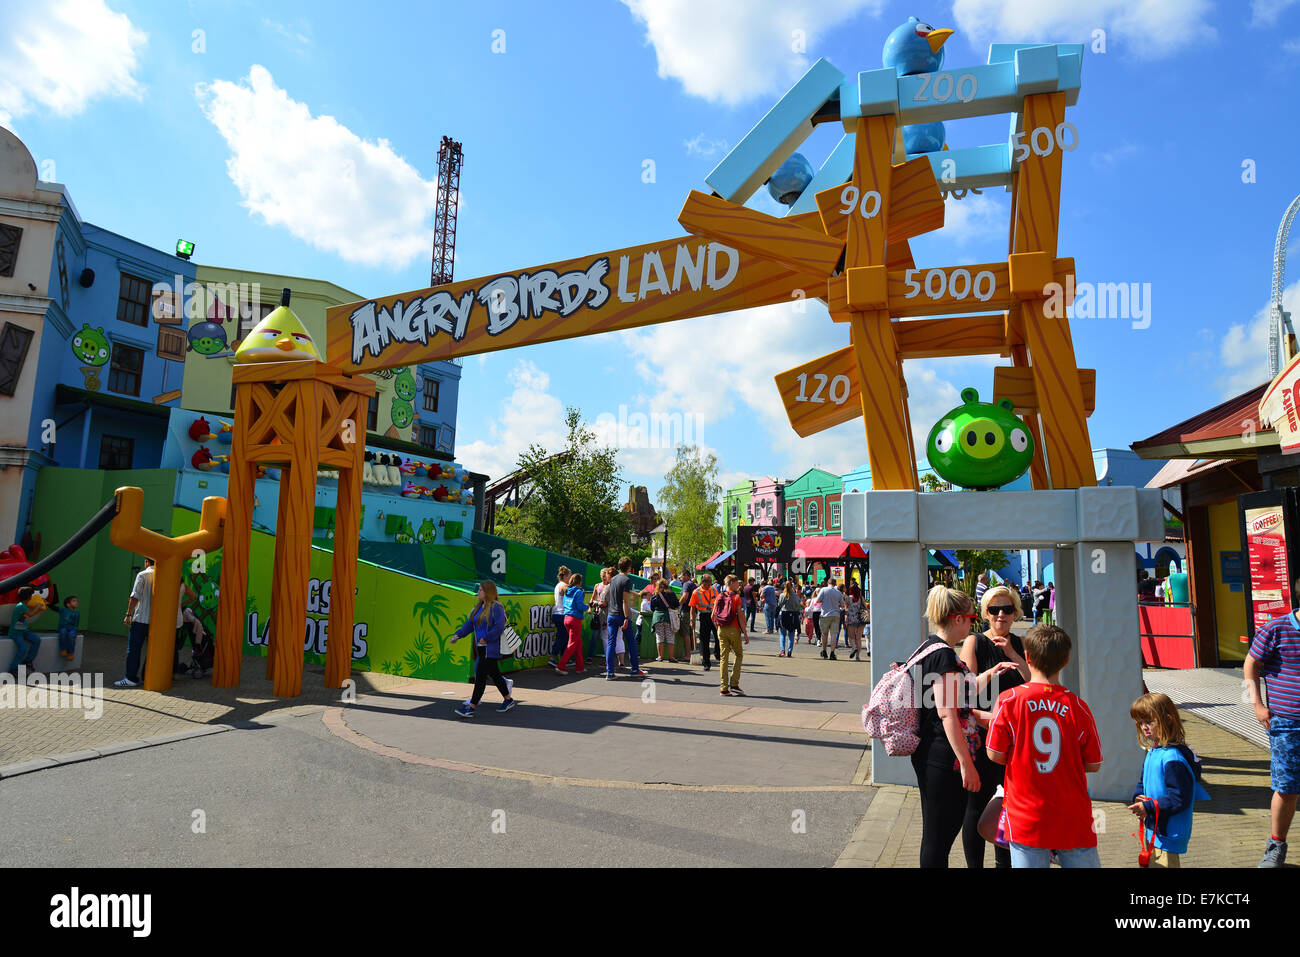 Panneau d'entrée d'Angry Birds Land, le parc à thème Thorpe Park, Chertsey, Surrey, Angleterre, Royaume-Uni Banque D'Images